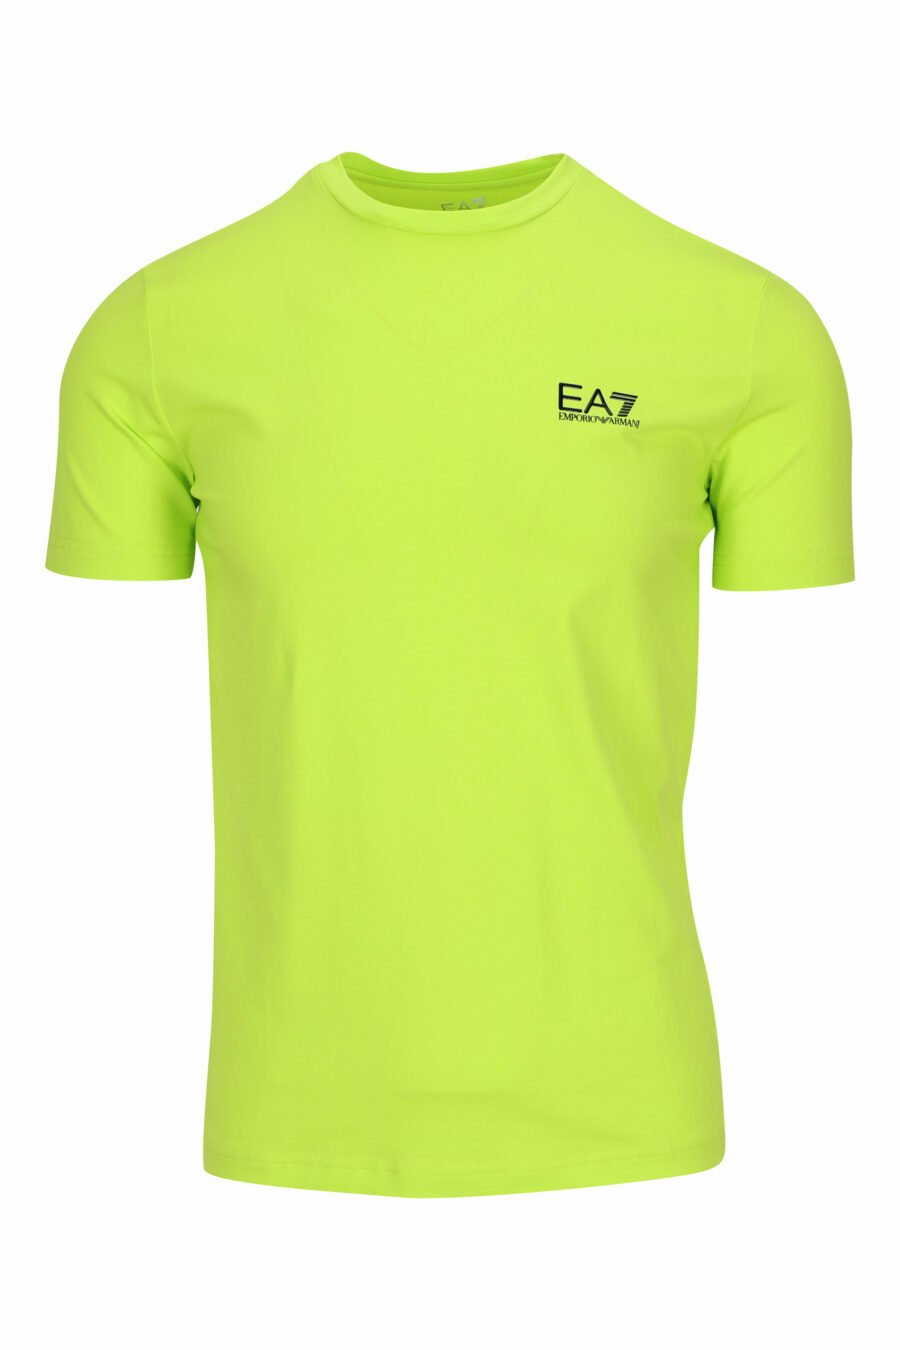 Camiseta verde lima con minilogo "lux identity" de goma - 8058947458301